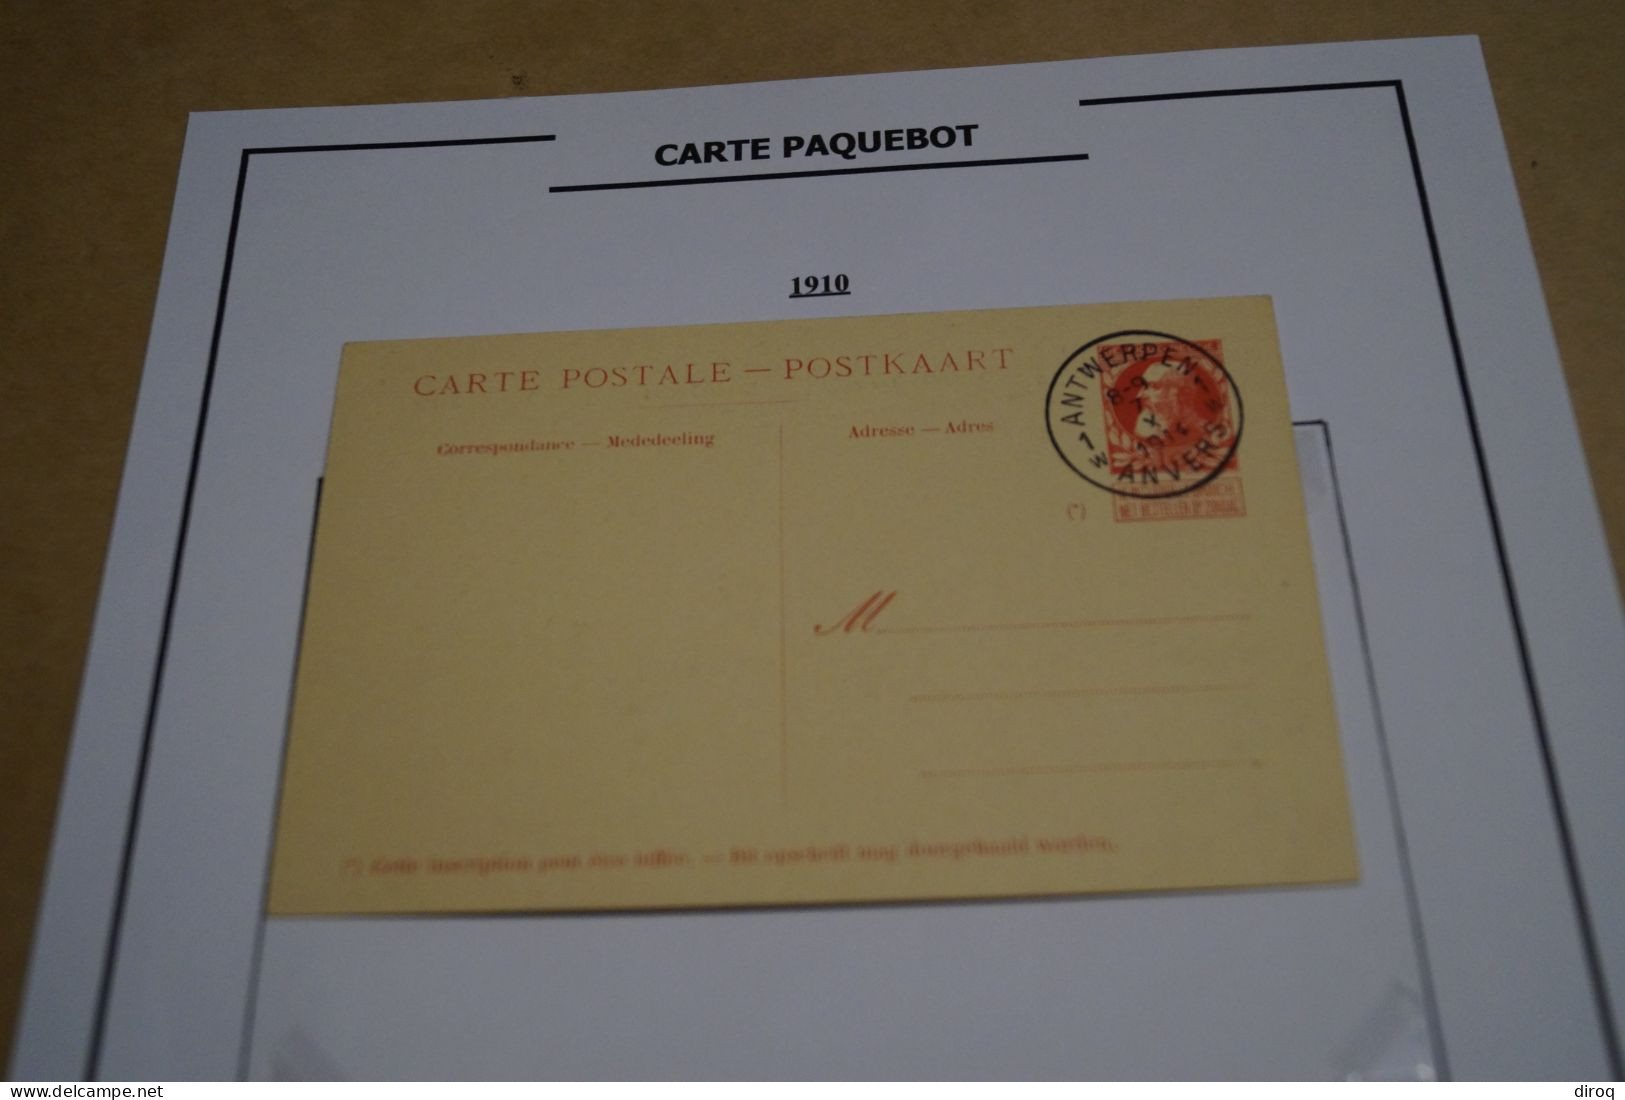 Carte Paquebot 1910, Le Jan Breydel,timbre Oblitéré 10 C. Rouge,grosse Barbe ,état Neuf Pour Collection - Steamers